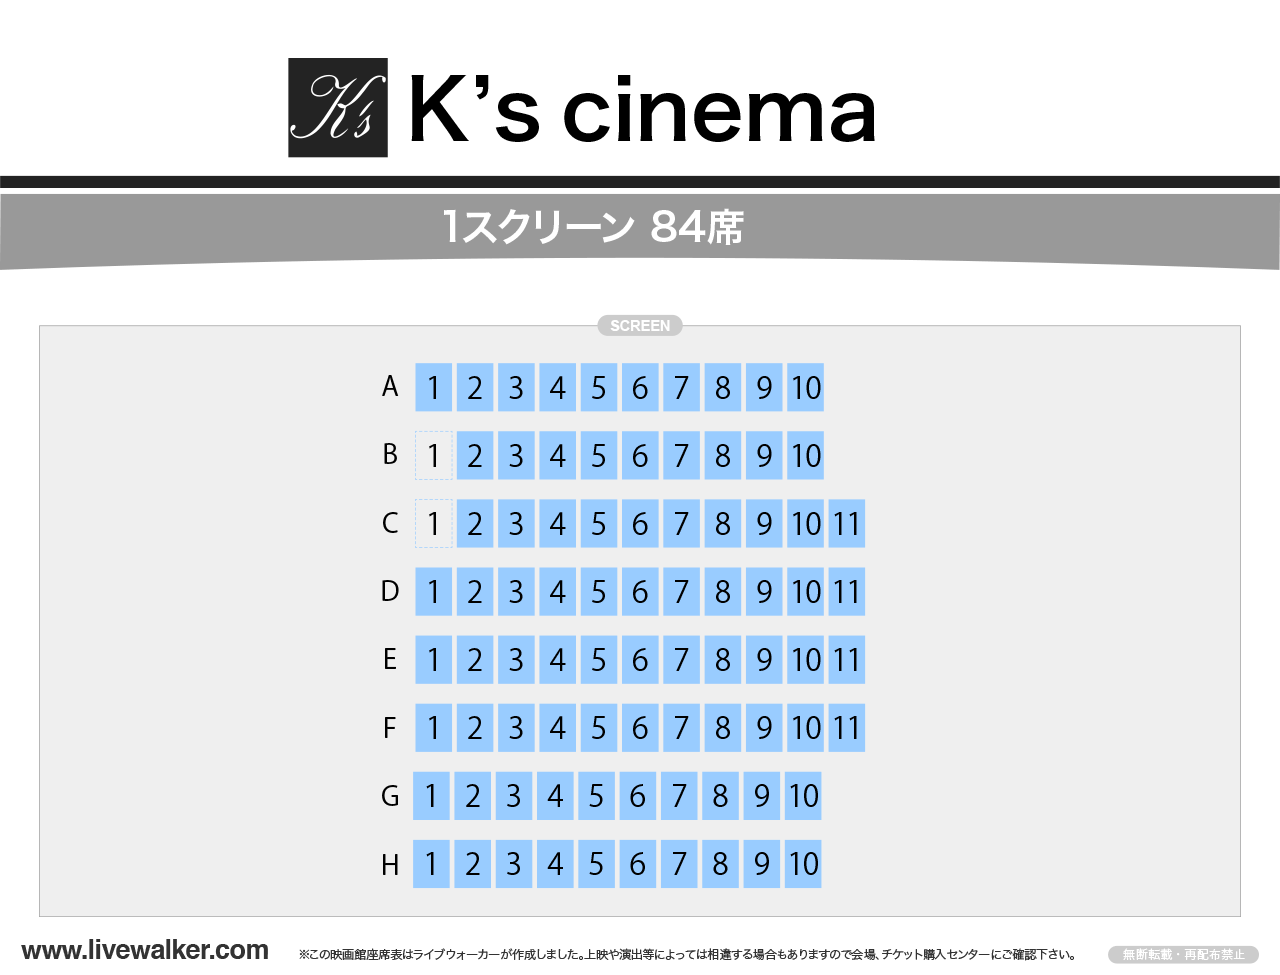 K’s cinemaの座席表